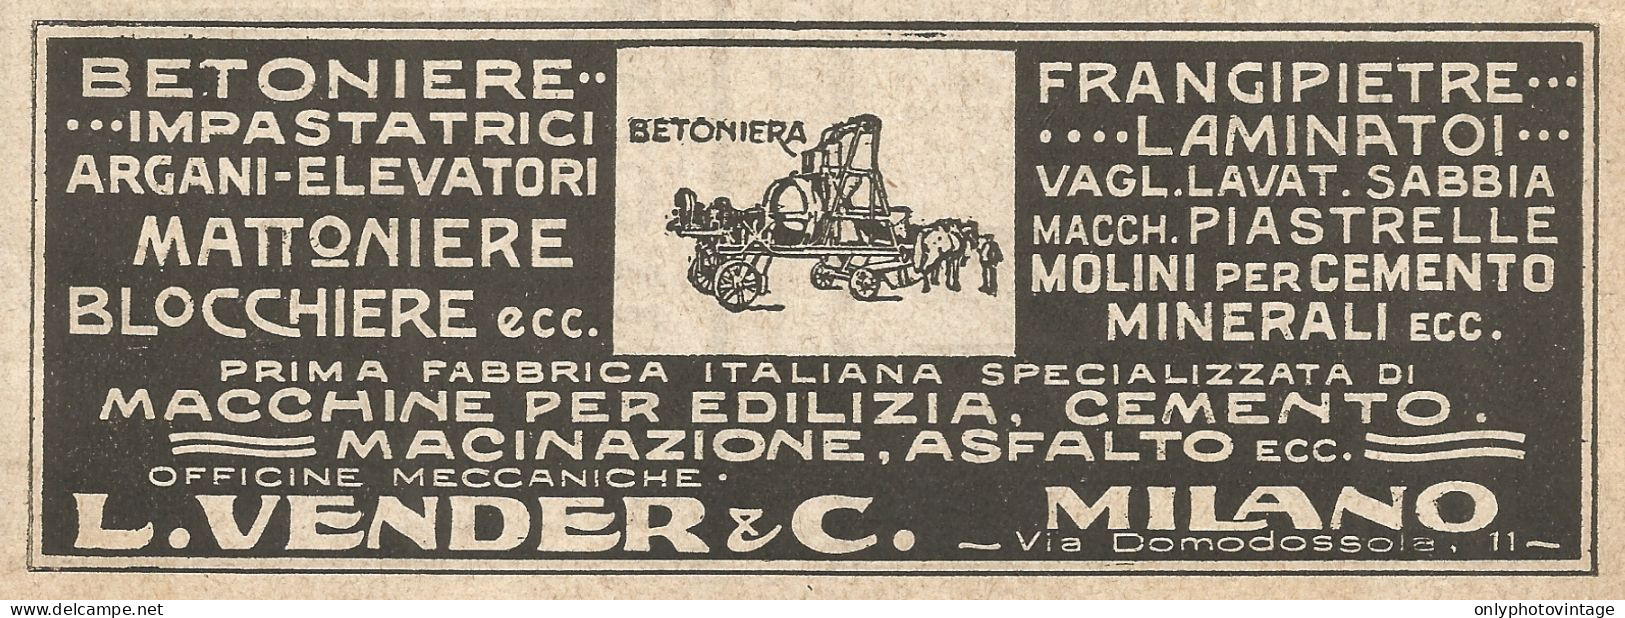 Officine Meccaniche L. VENDER & C. - Pubblicità Del 1923 - Vintage Advert - Advertising